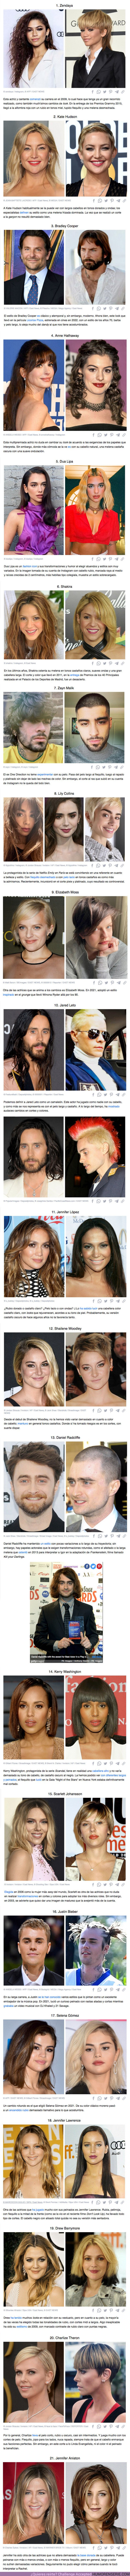 93190 - GALERÍA: 21 Casos en los que famosos no eligieron bien su peinado y color de pelo